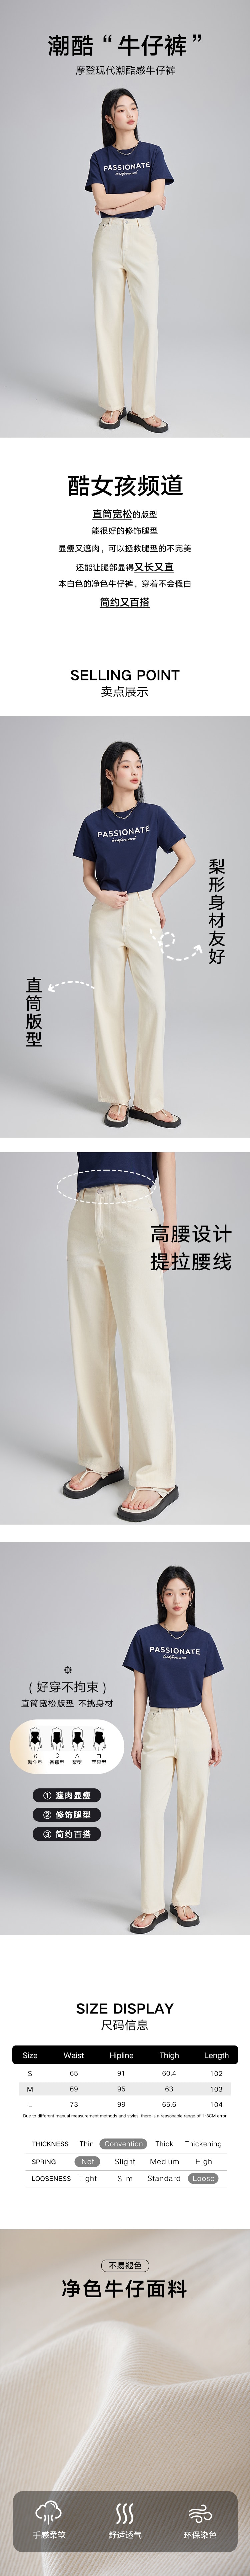 【中国直邮】HSPM 新款显瘦高腰阔腿直筒牛仔裤 白色 S